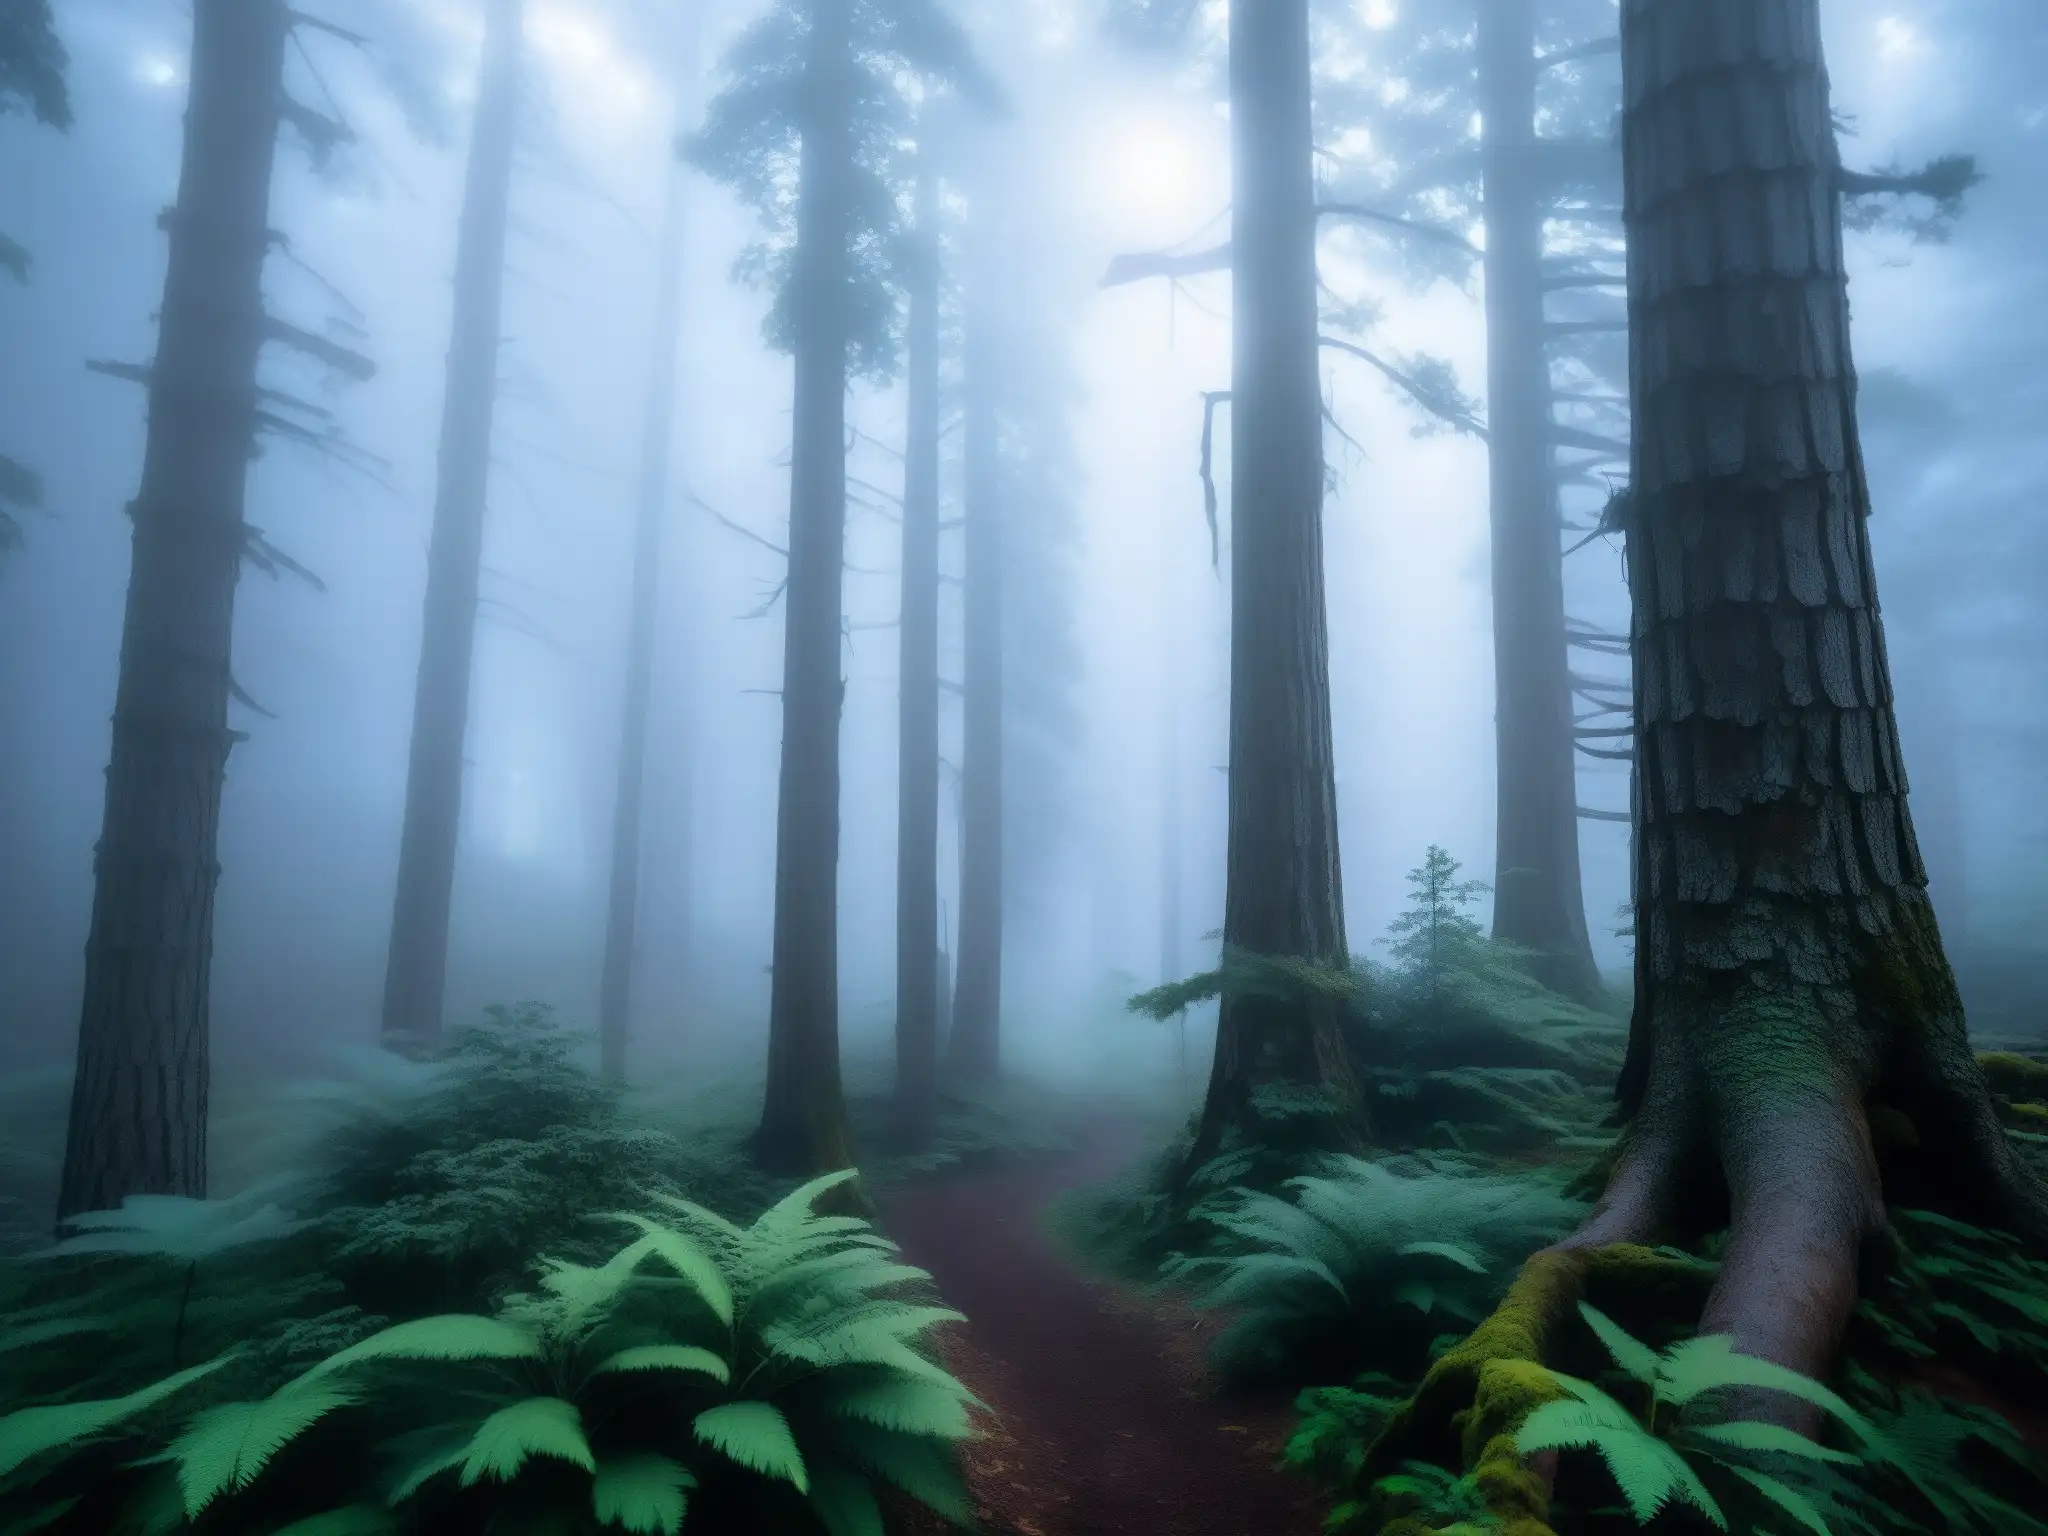 El enigma del bosque siniestro: un bosque misterioso y tenebroso, con árboles antiguos envueltos en niebla y rayos de sol dorado